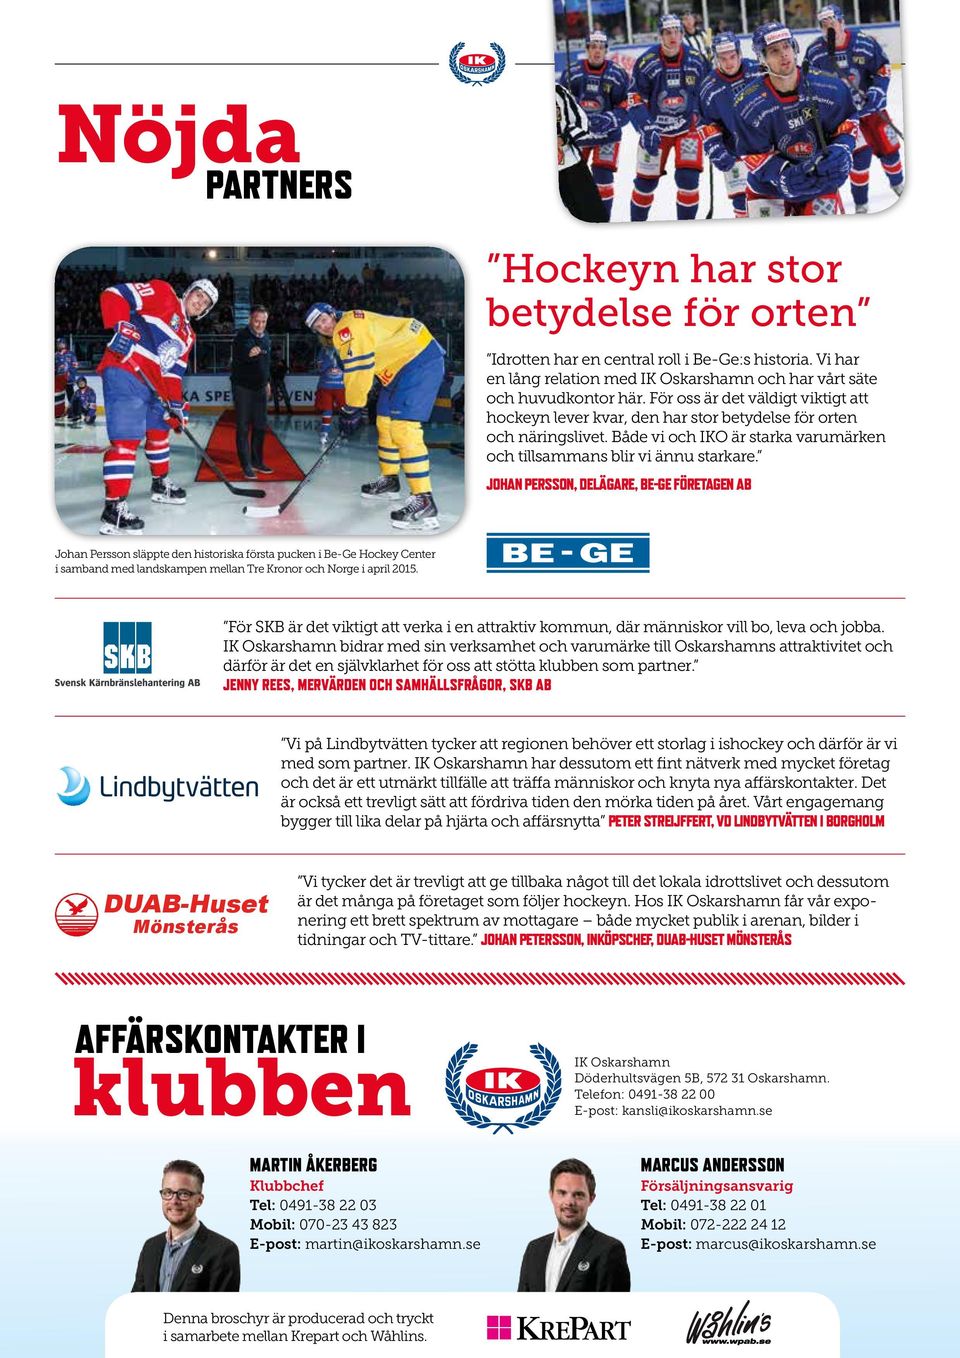 JOHAN PERSSON, DELÄGARE, BE-GE FÖRETAGEN AB Johan Persson släppte den historiska första pucken i Be-Ge Hockey Center i samband med landskampen mellan Tre Kronor och Norge i april 2015.